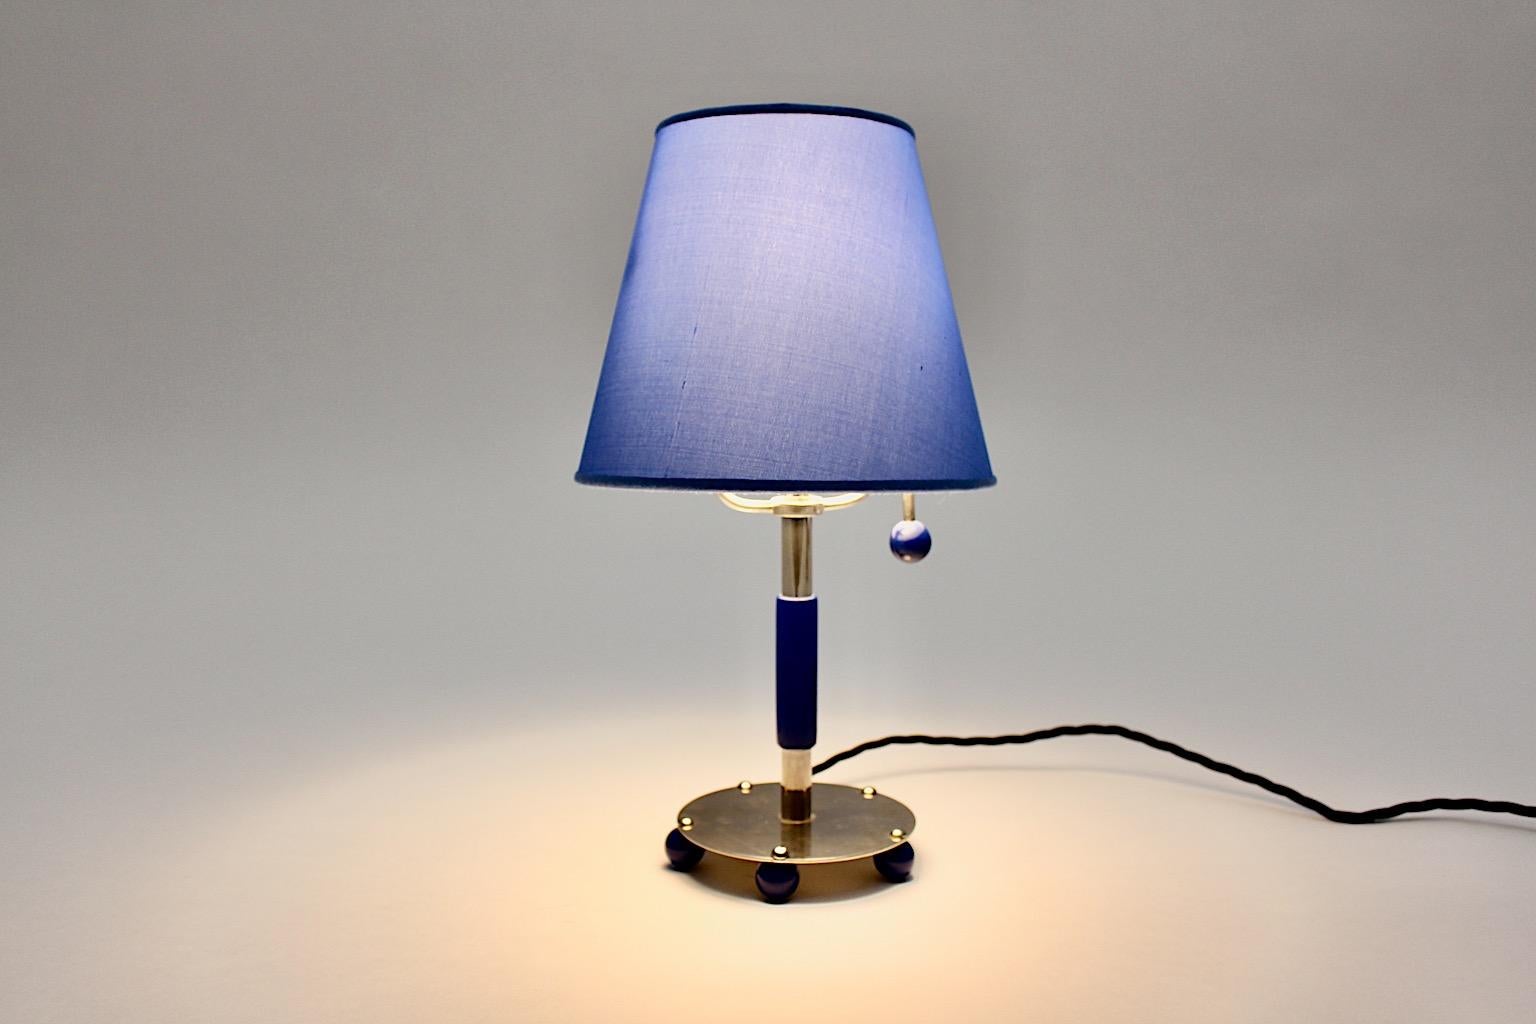 Blue Art Deco Vintage Chromed Metal Adjustable Table Lamp, 1930, Germany For Sale 4